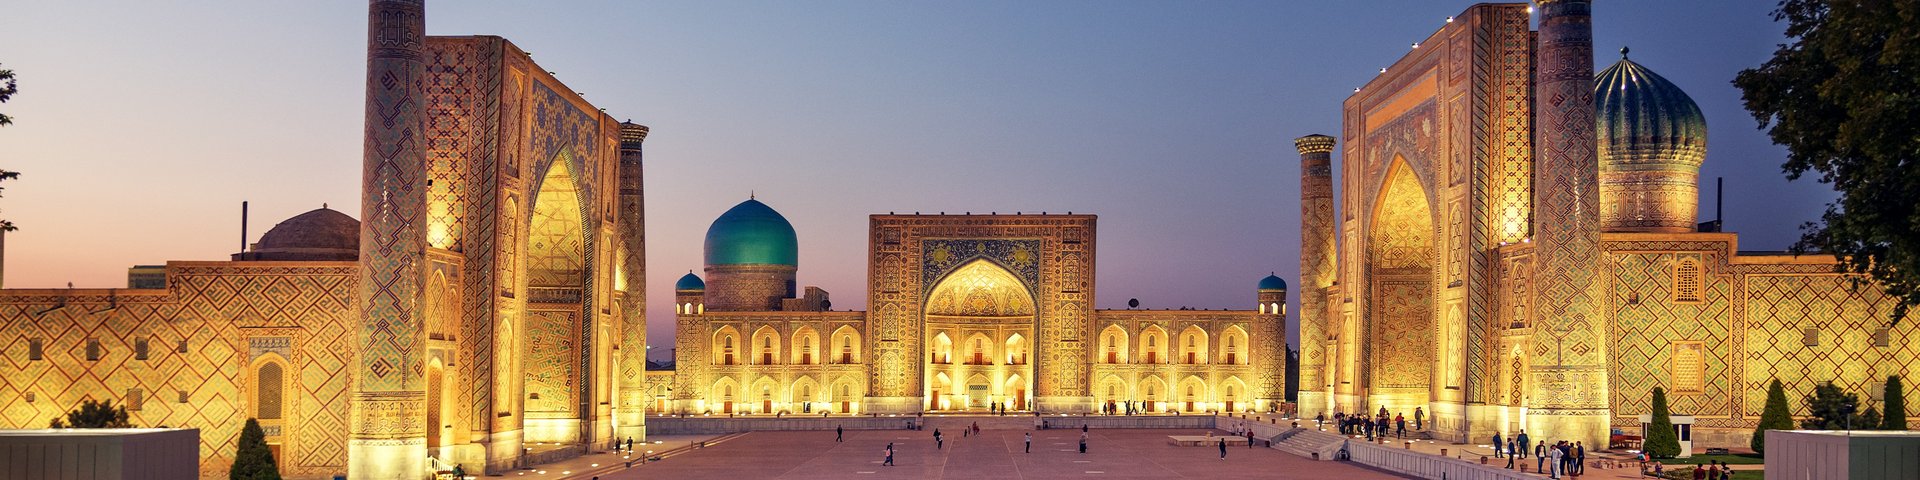 Der Registan-Platz in Samarkand hell beleuchtet am Abend